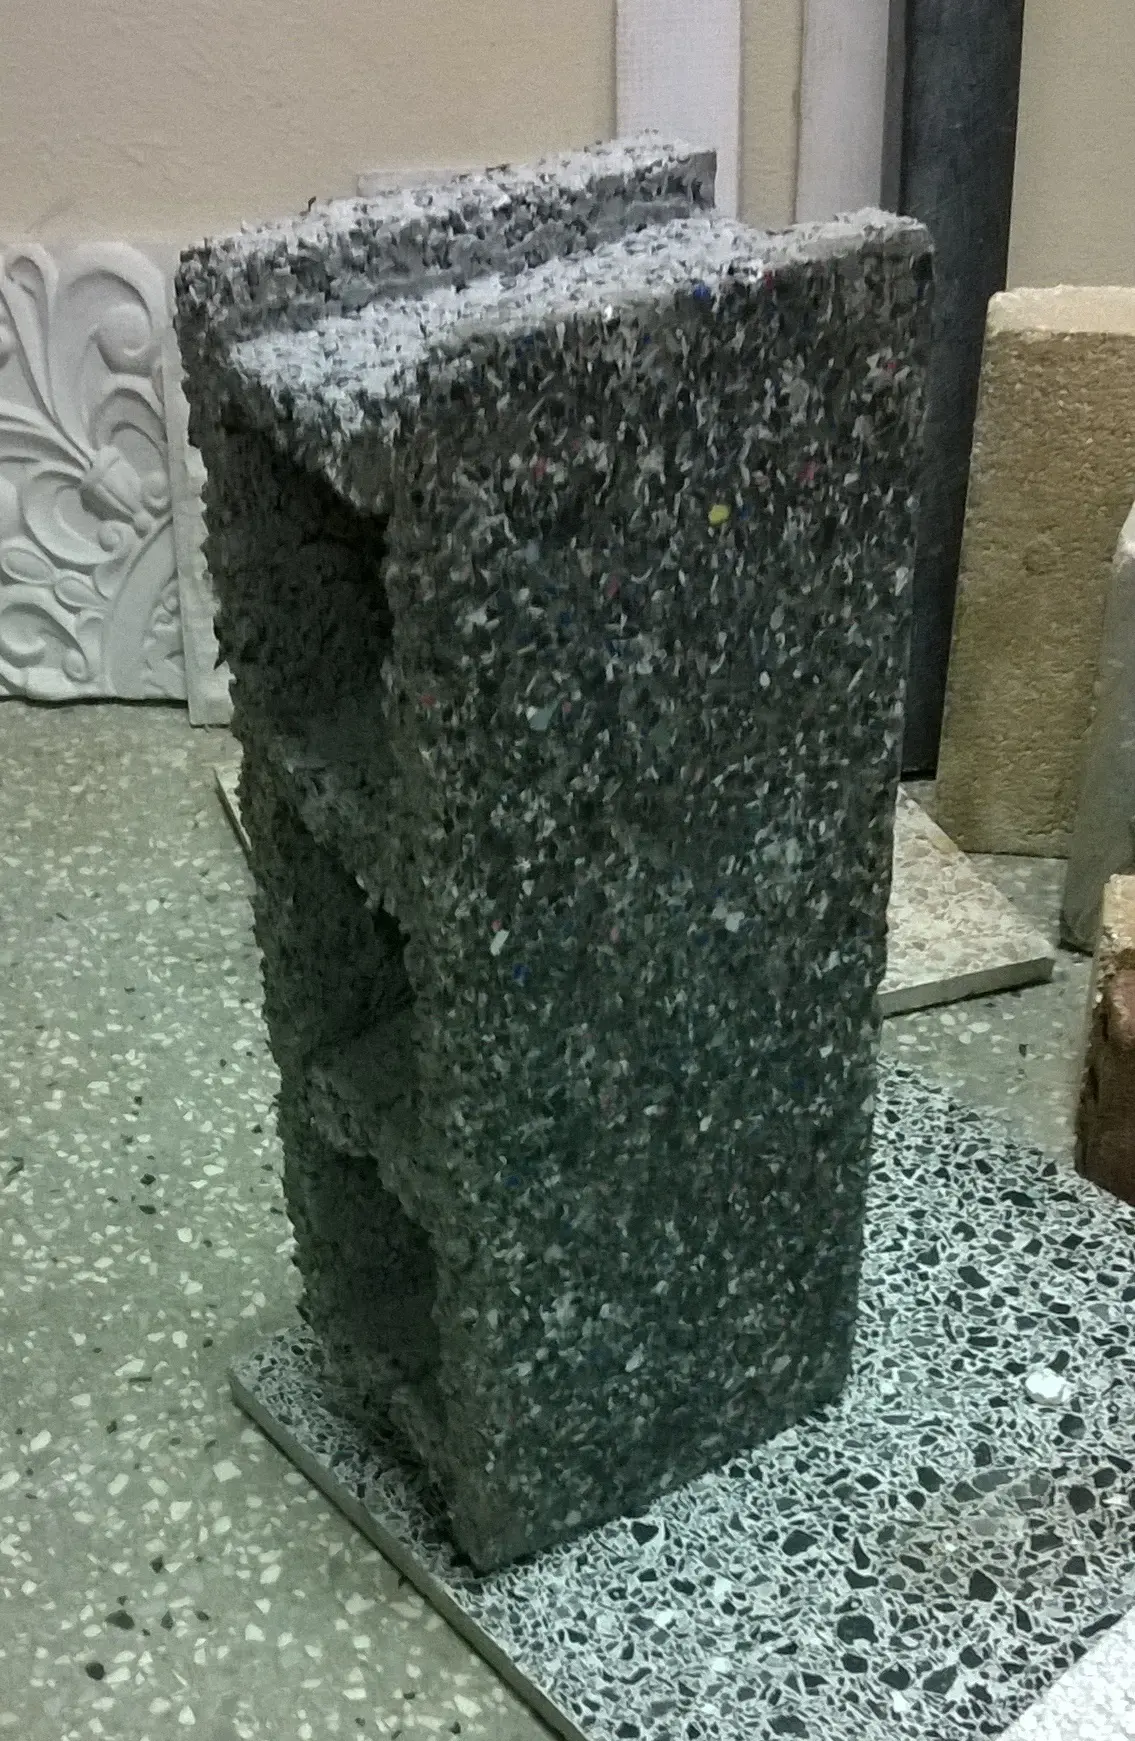 bloques de cemento con plastico - Cómo se prepara la mezcla para hacer bloques